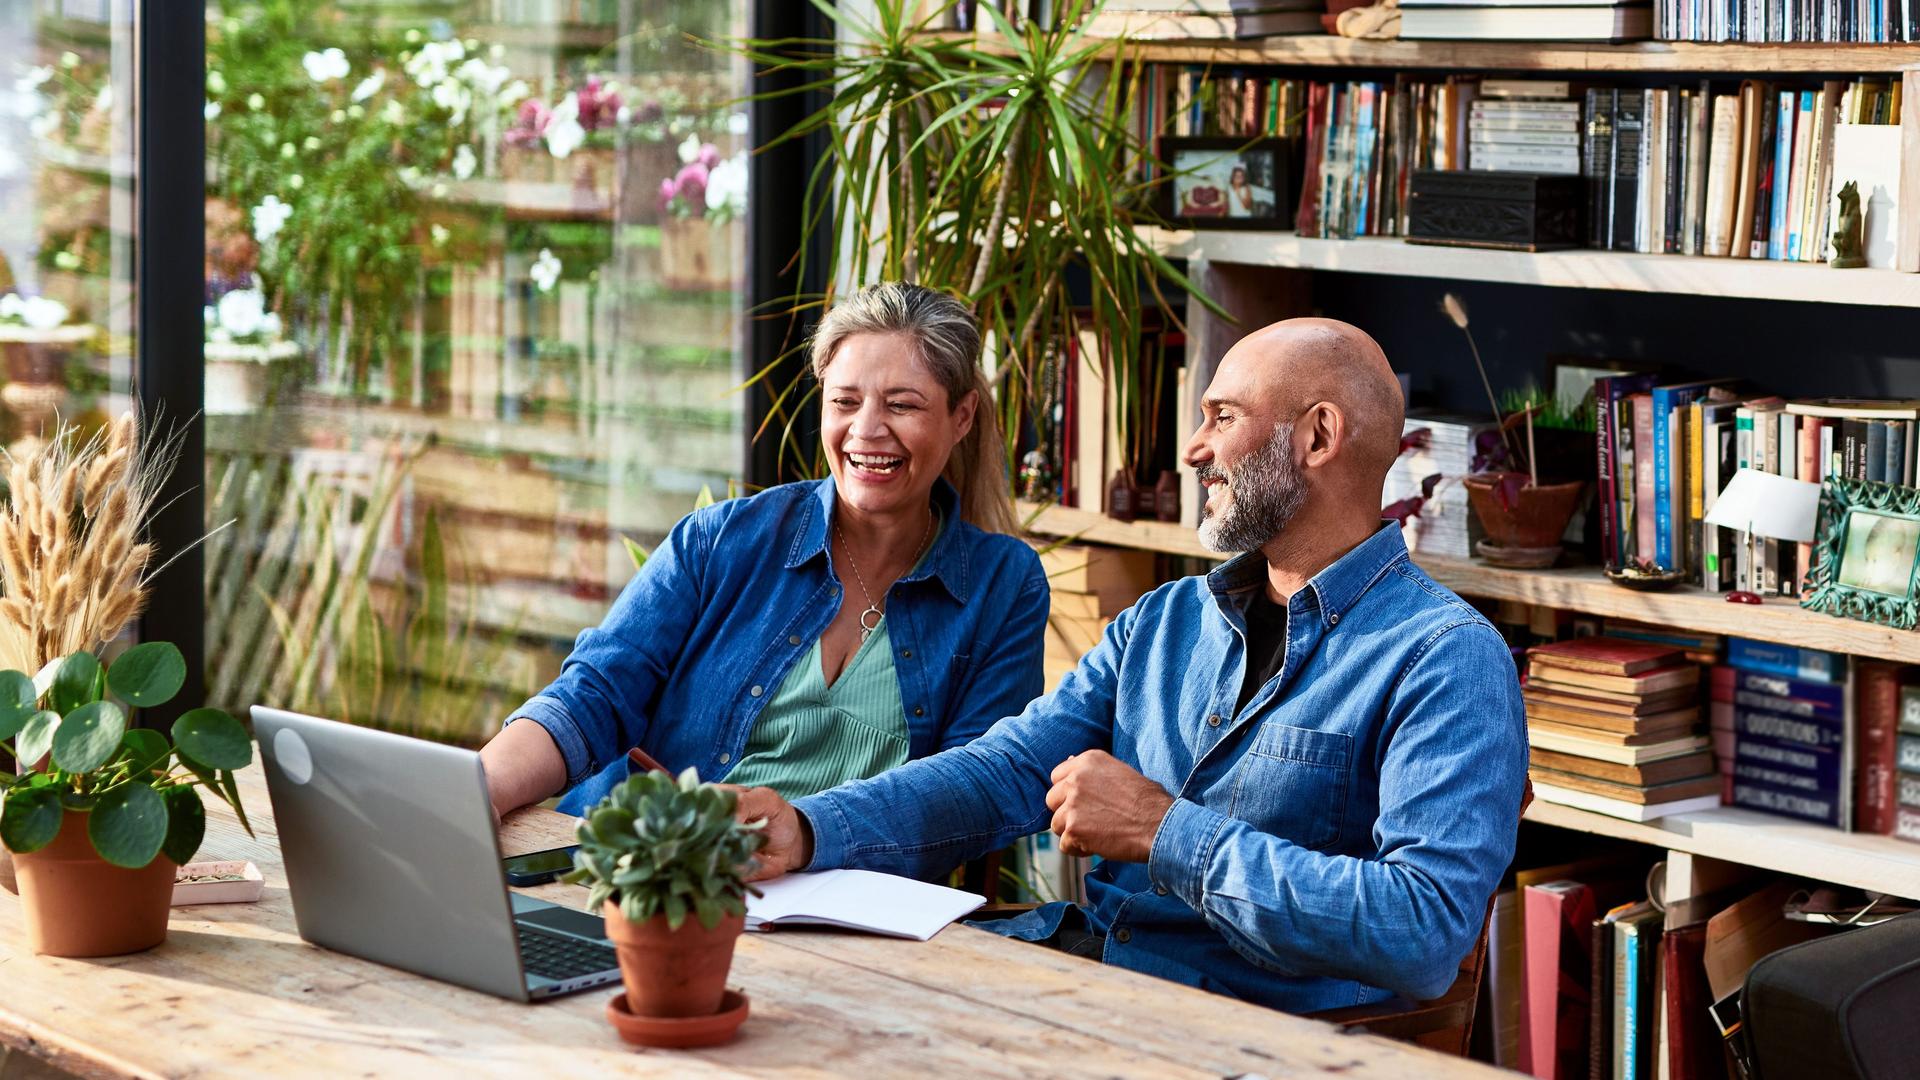 Älteres Paar, das zusammen an einem Holztisch vor einem Laptop sitzt und miteinander redet und lacht. Hinter ihnen ist ein Bücherregal und ein Panoramafenster in den Garten.